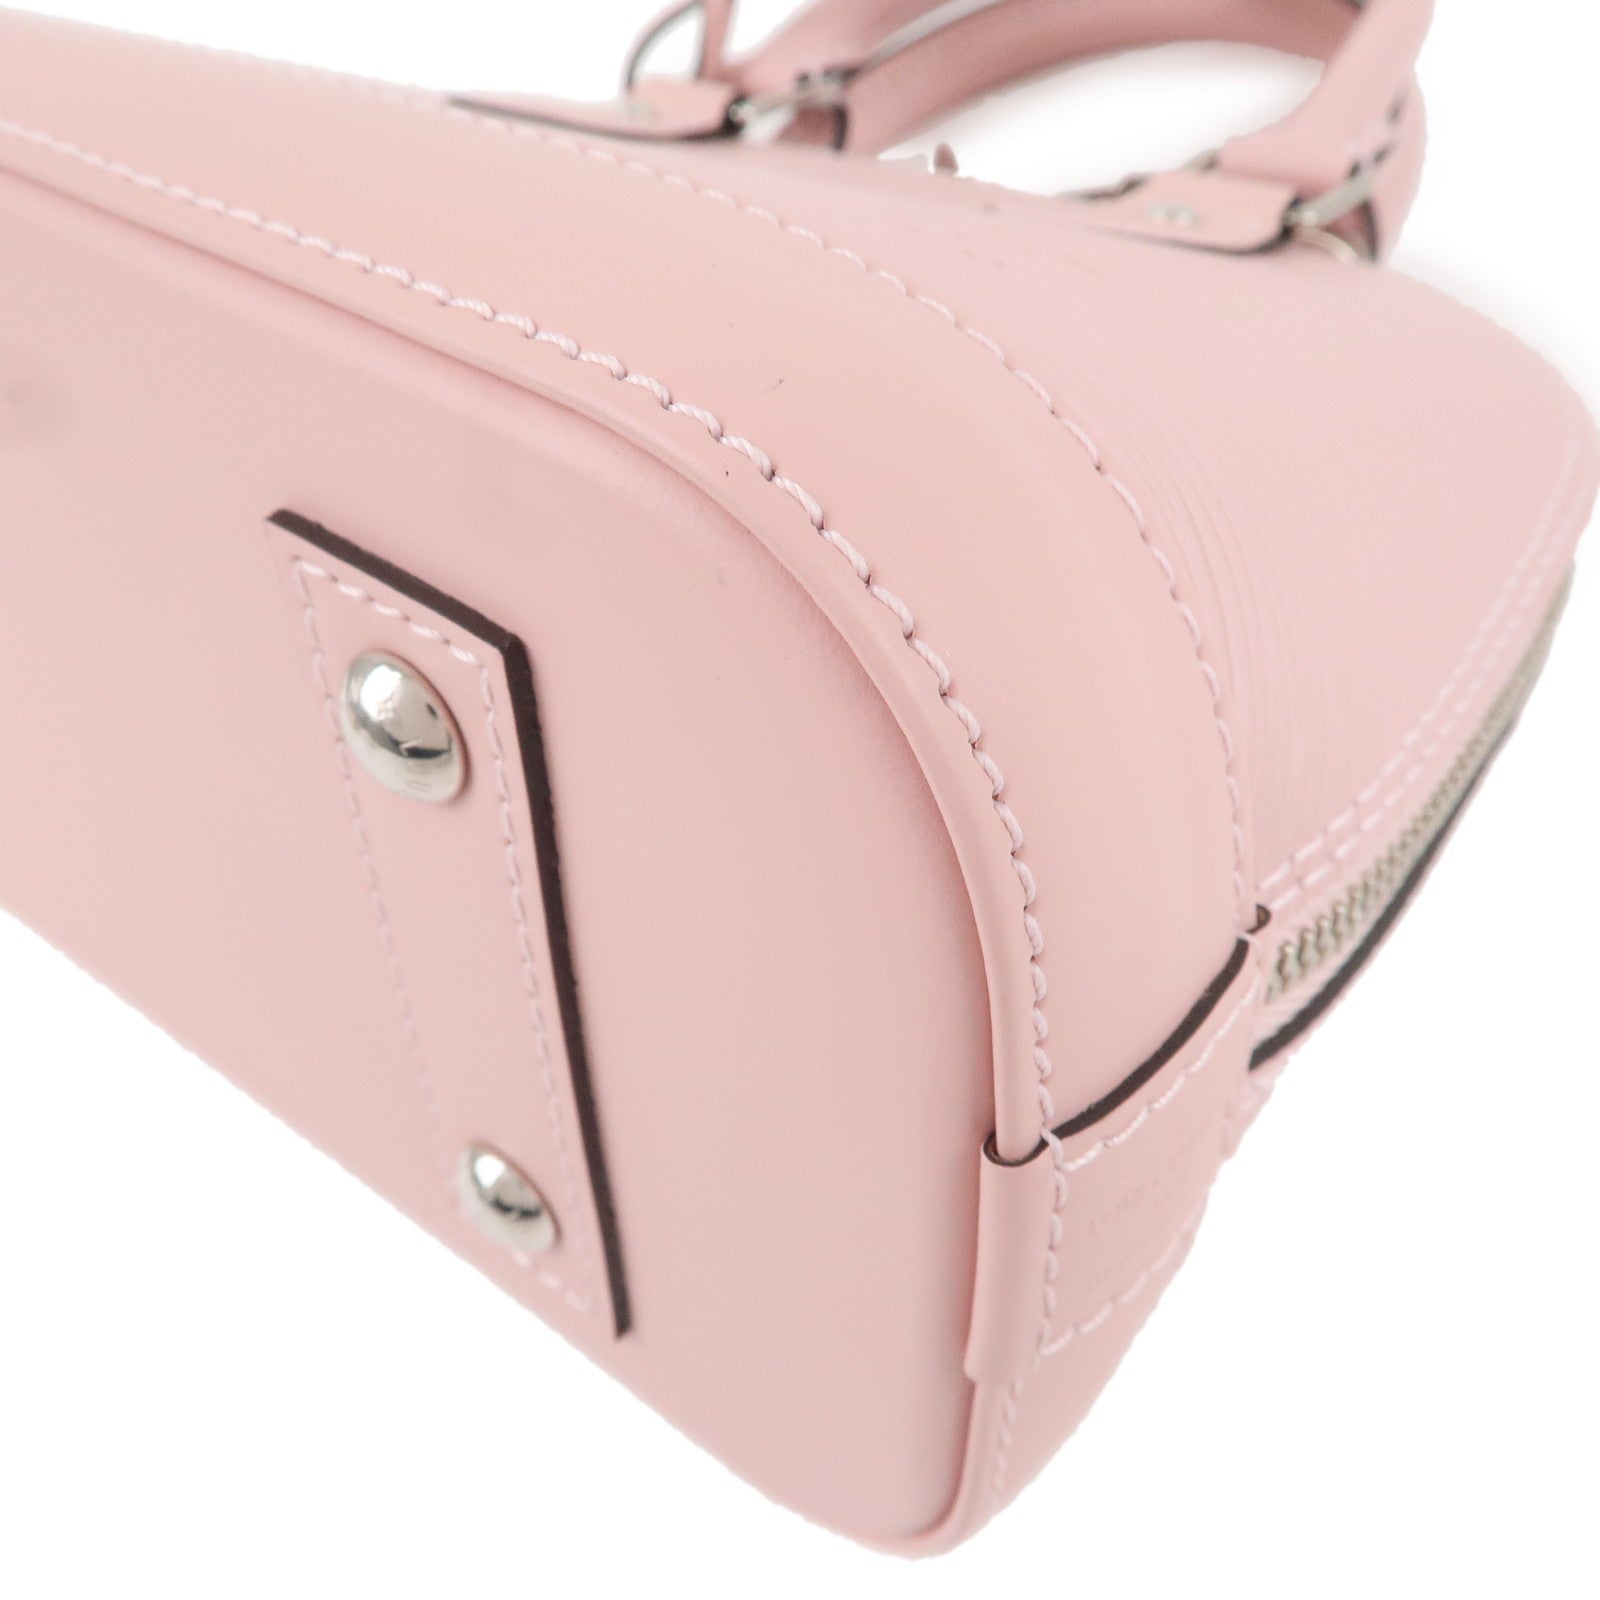 Louis Vuitton Alma BB Pink Rose Ballerine Epi Hand Shoulder Bag w/Pad Lock  Key